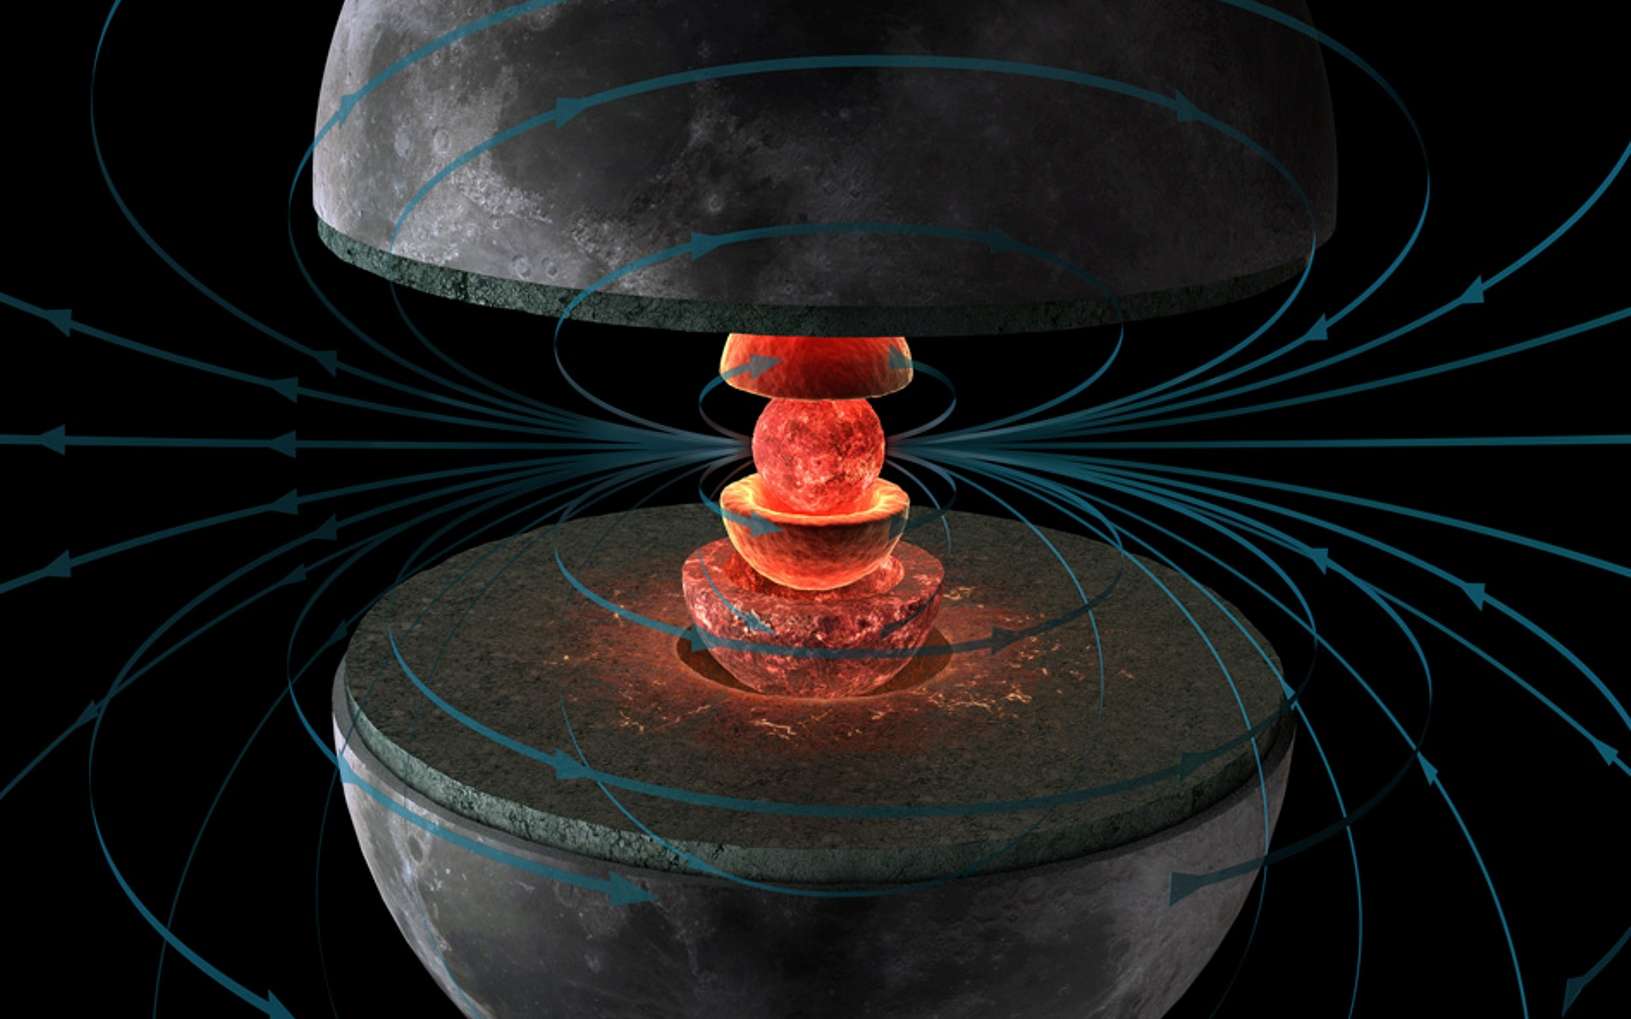 Une vision d'artiste de l'intérieur de la Lune alors que son cœur liquide était encore en mouvement, générant un champ magnétique. © Hernán Cañellas